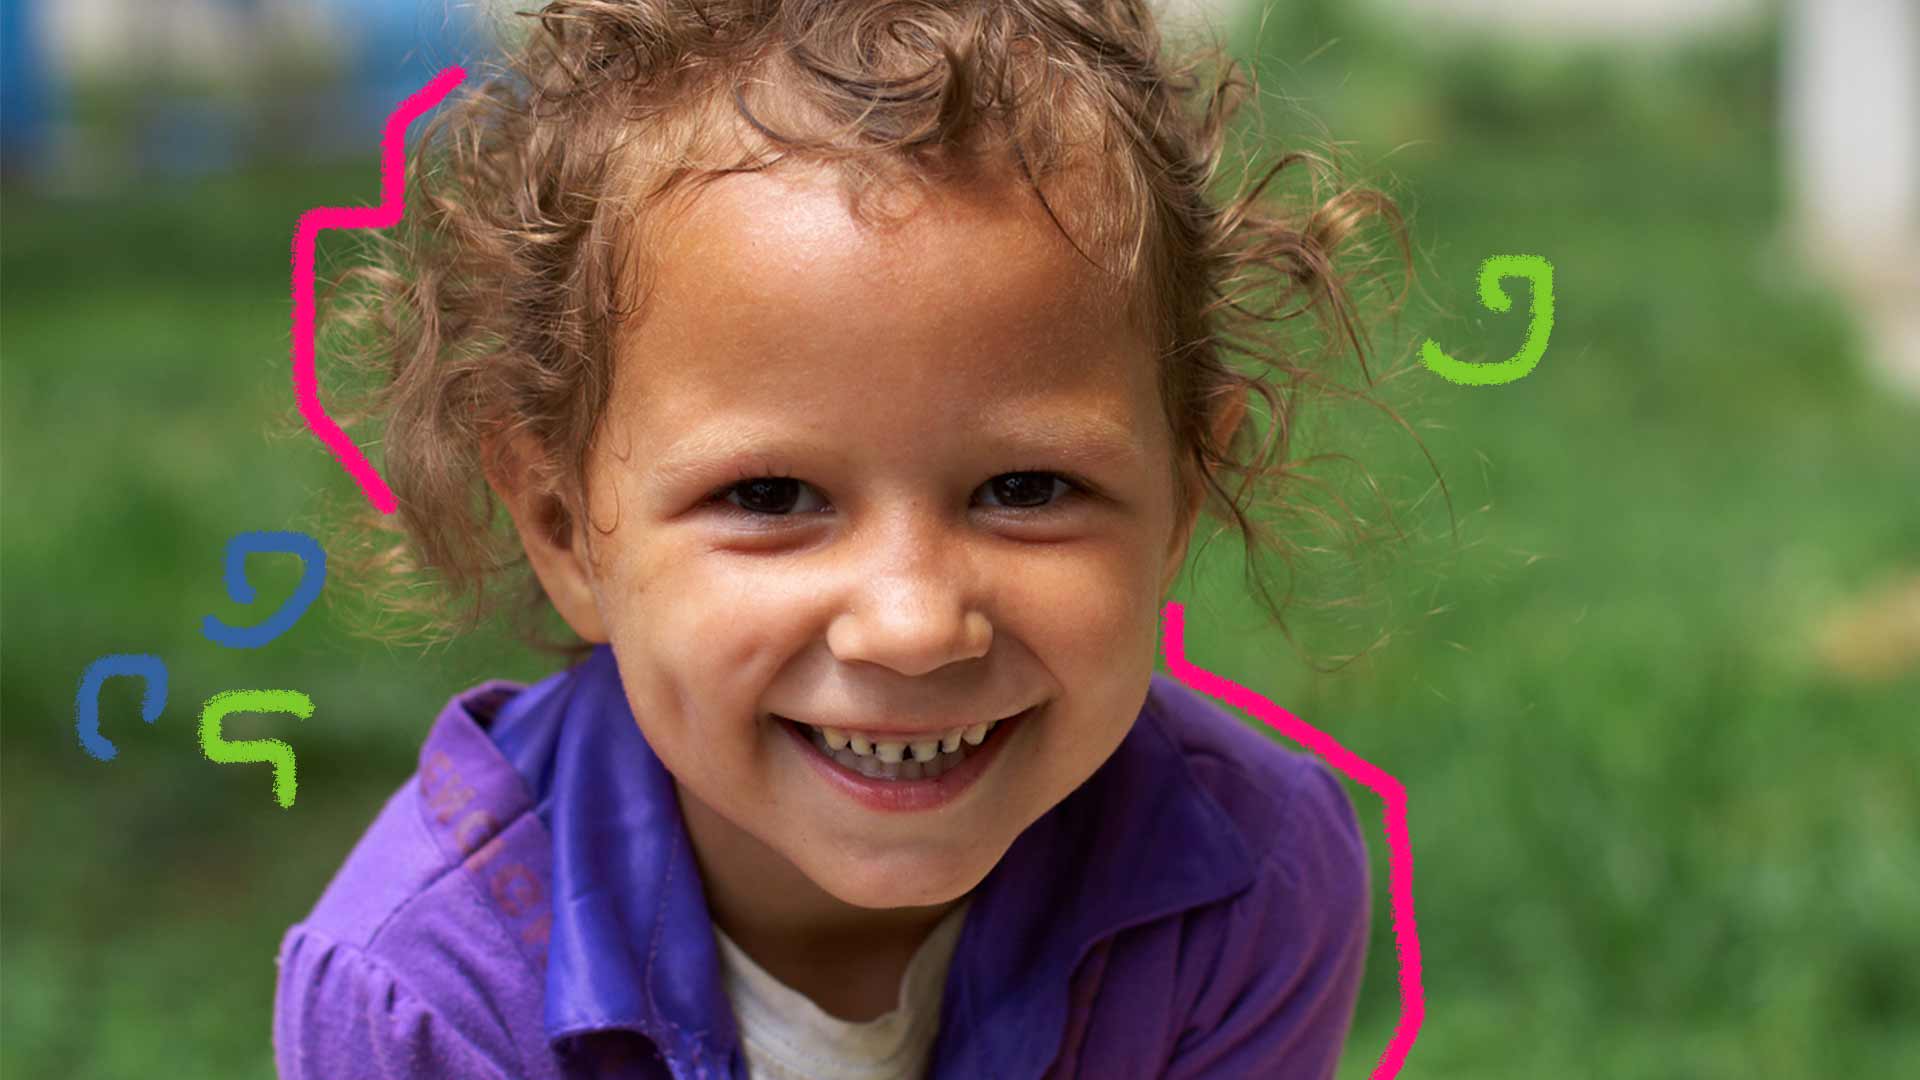 Foto de uma criança sorrindo em primeiro plano, atrás uma imagem fosca com o fundo verde